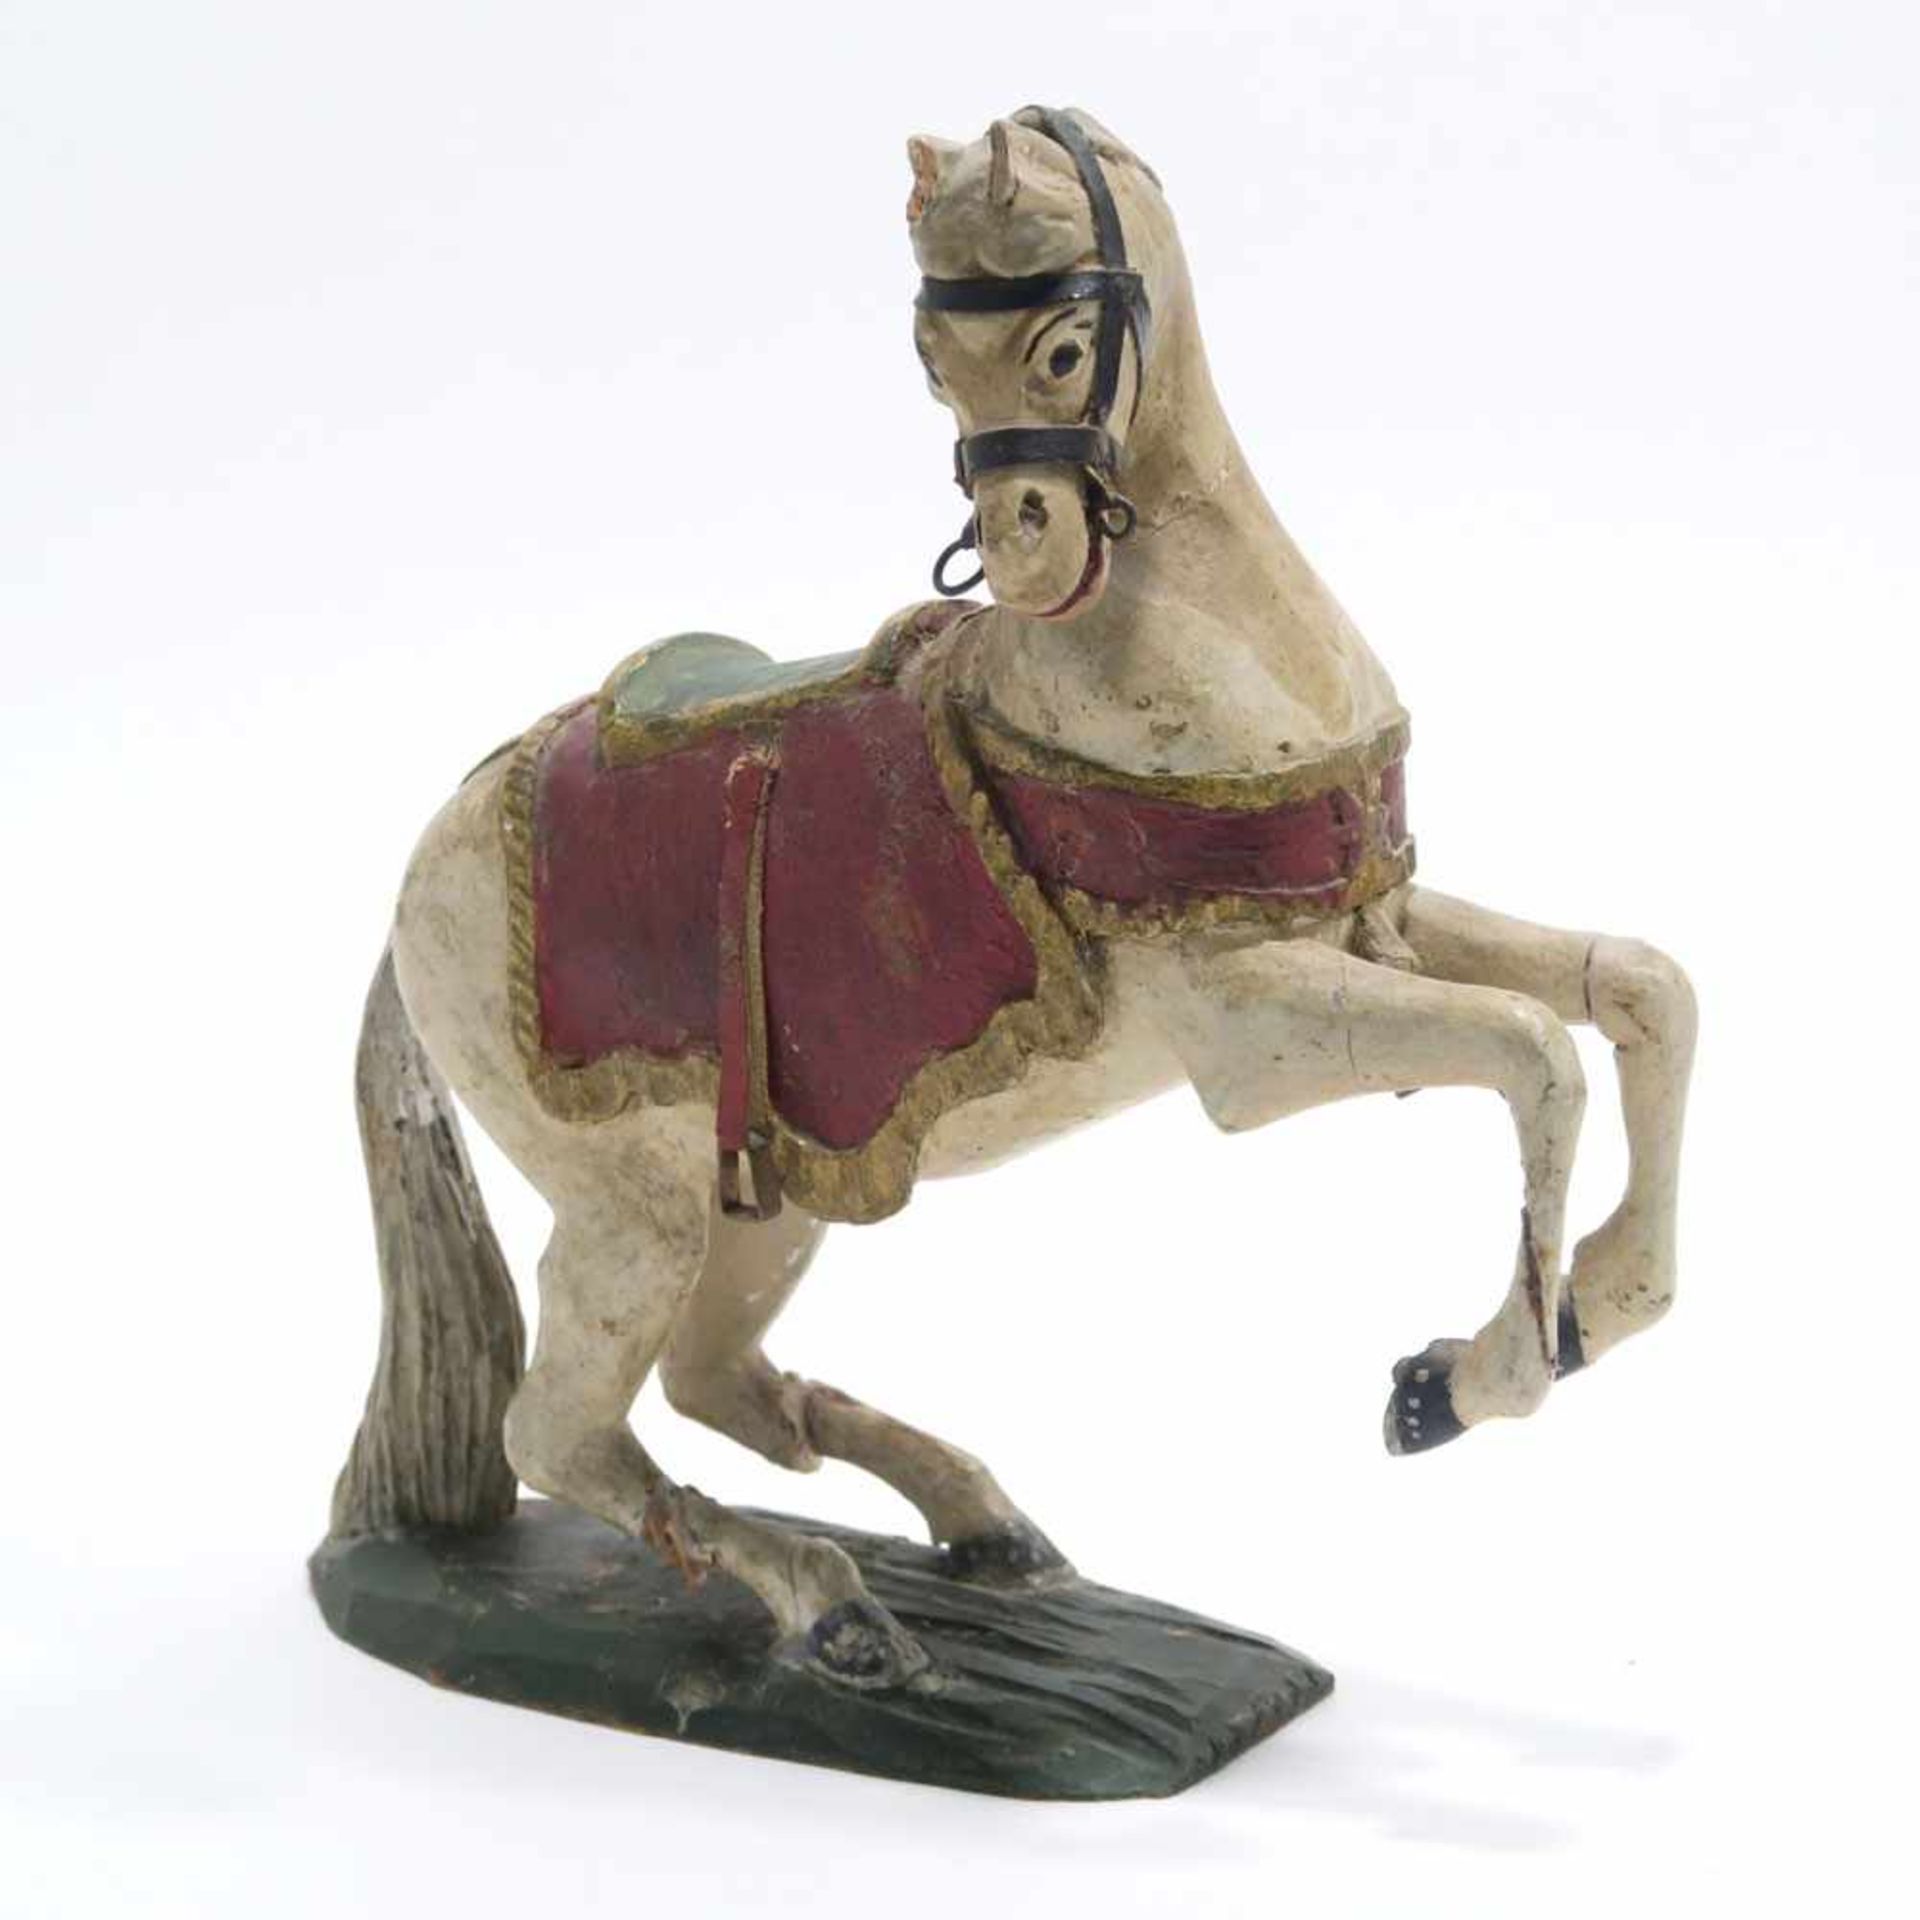 PferdWohl Gröden. Holz, geschnitzt, Farb- und Goldfassung, mit Leder. Rep., besch. H. 19,5 cm.- - -